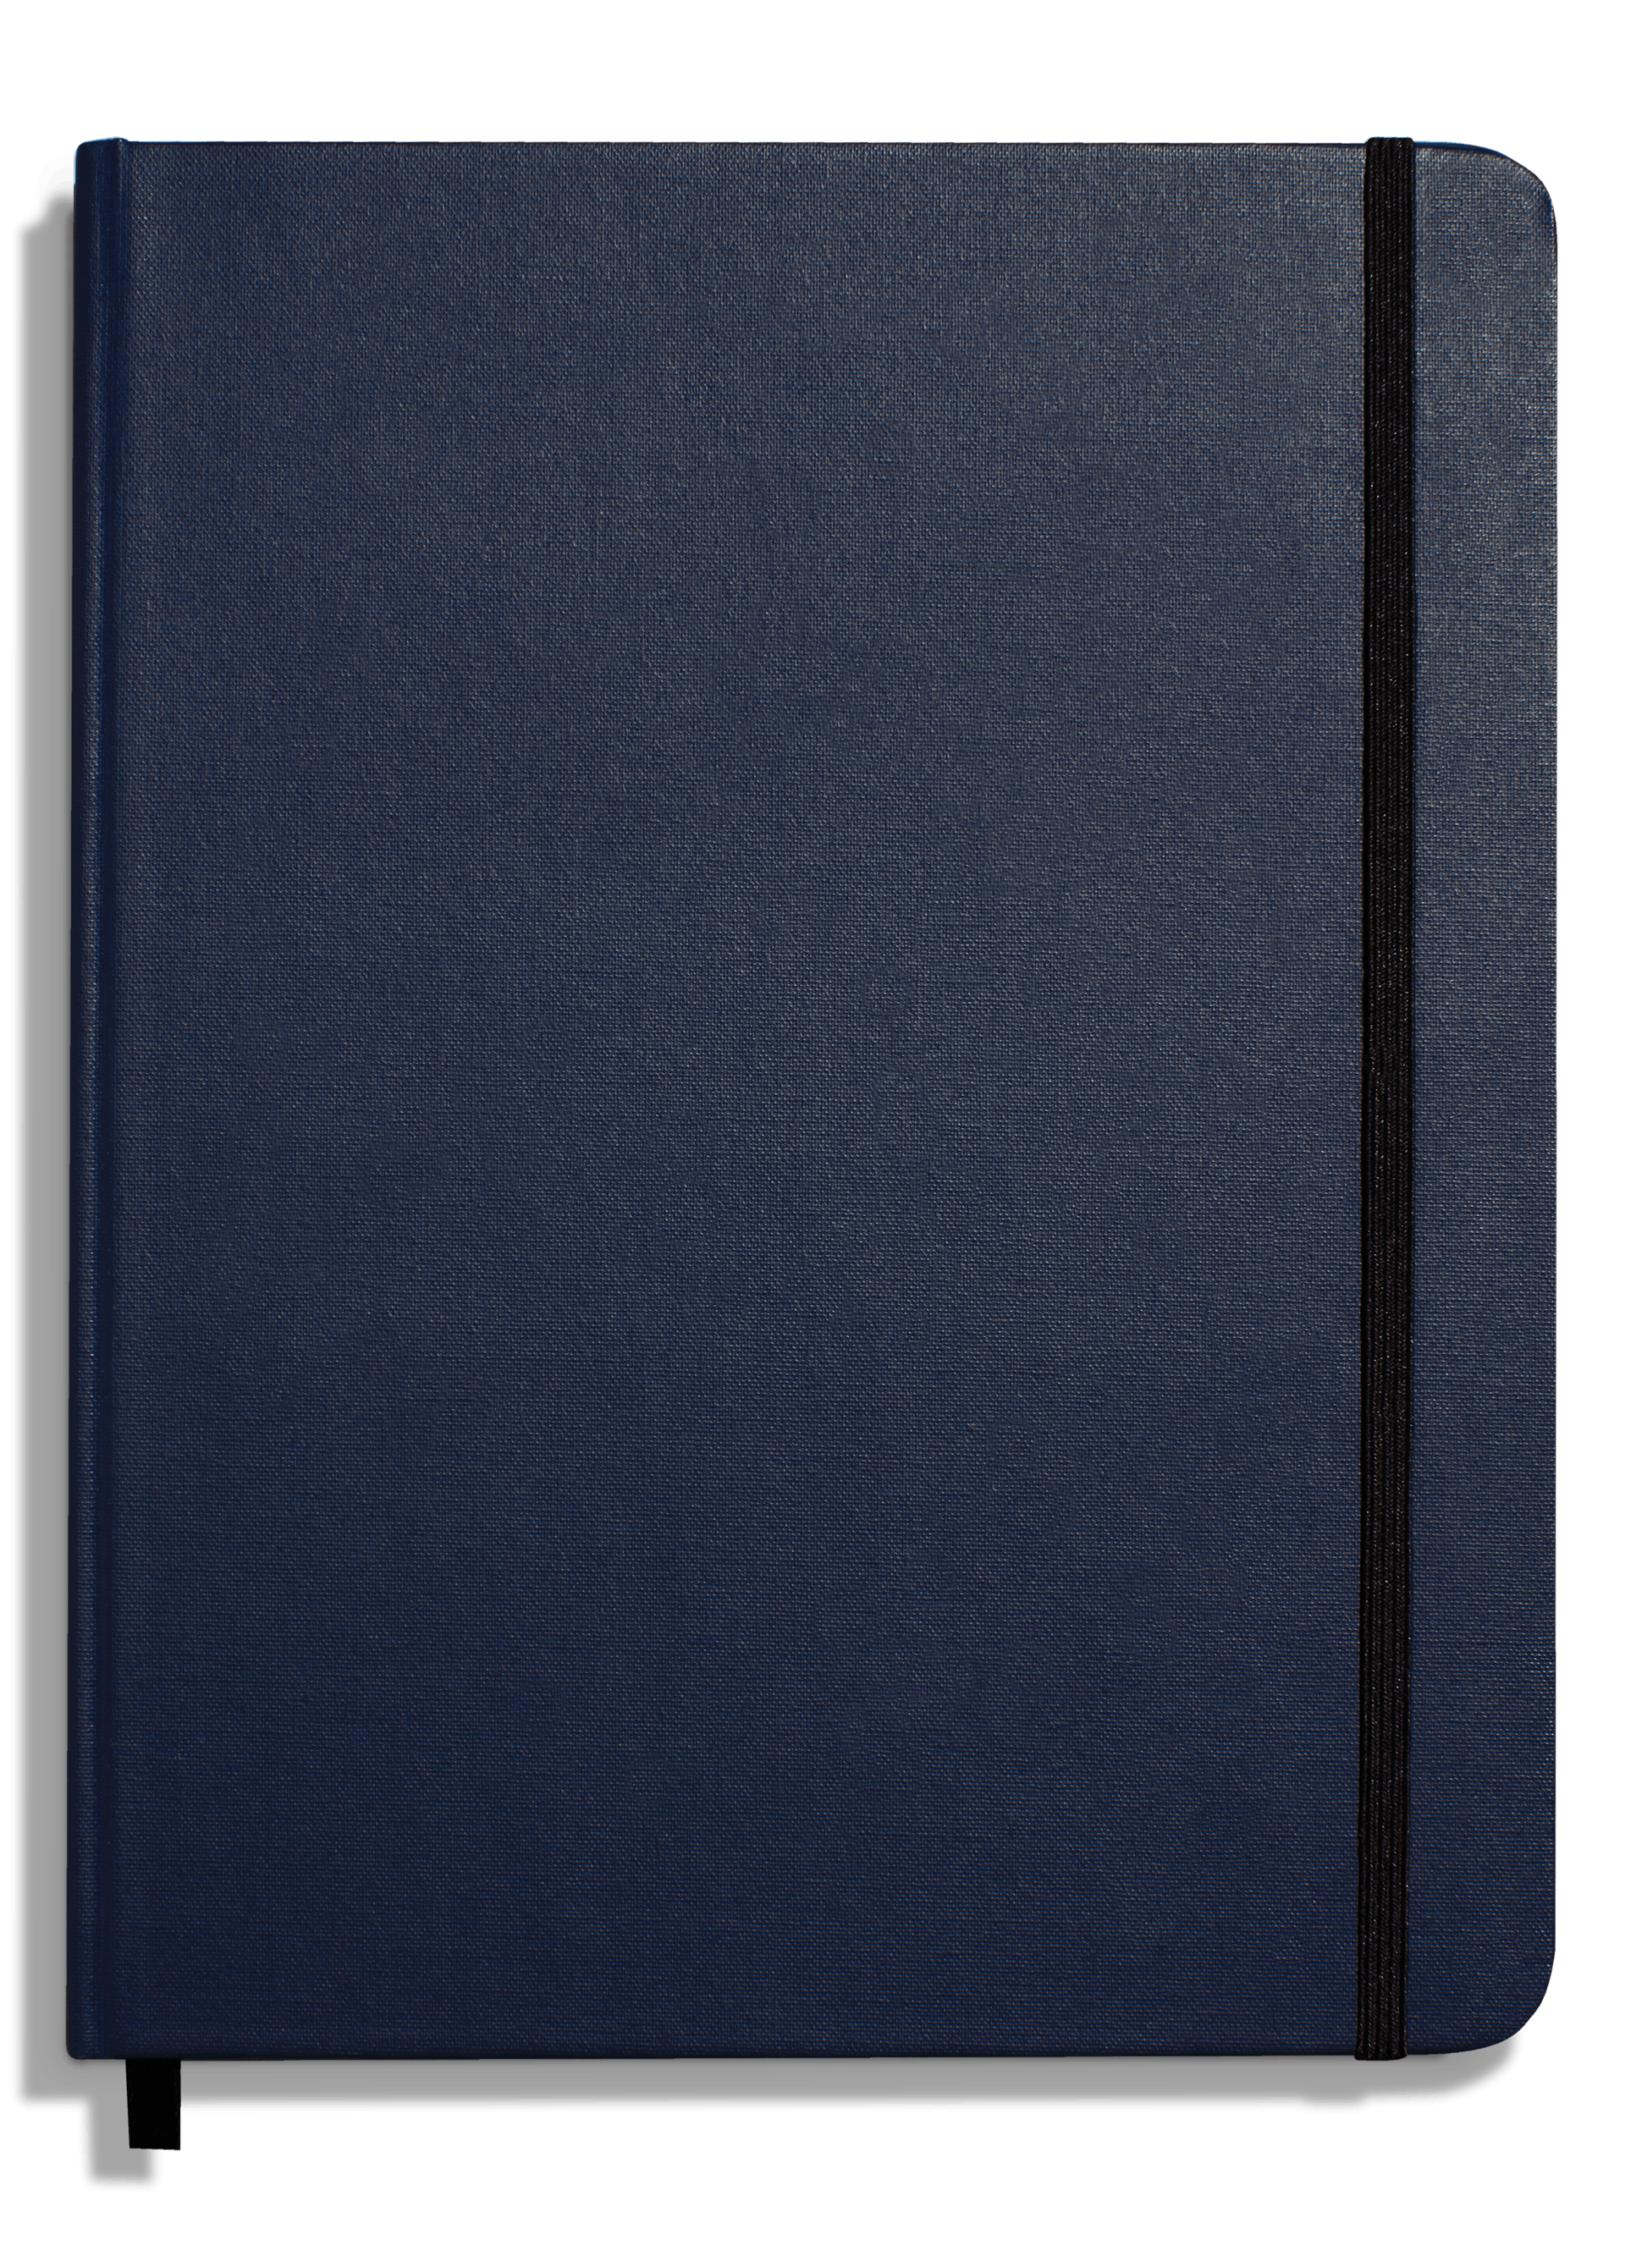 【新作格安】【値下げ】Shinola Lサイズ ジャーナルカバー (システム手帳) 手帳・日記・家計簿